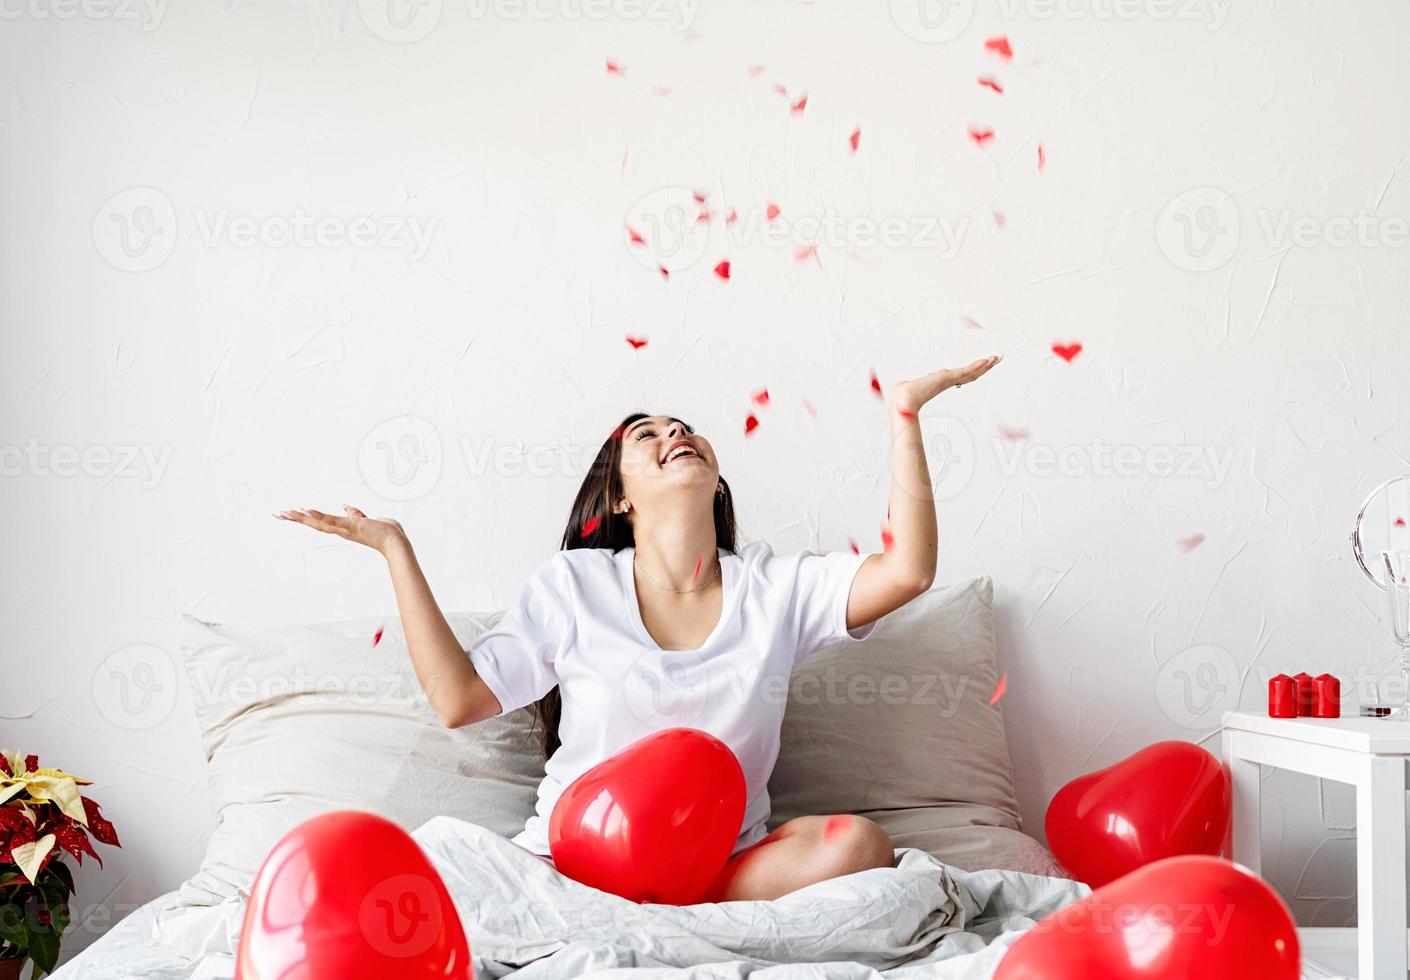 Feliz joven mujer morena sentada en la cama con globos en forma de corazón rojo lanzando confeti en el aire foto